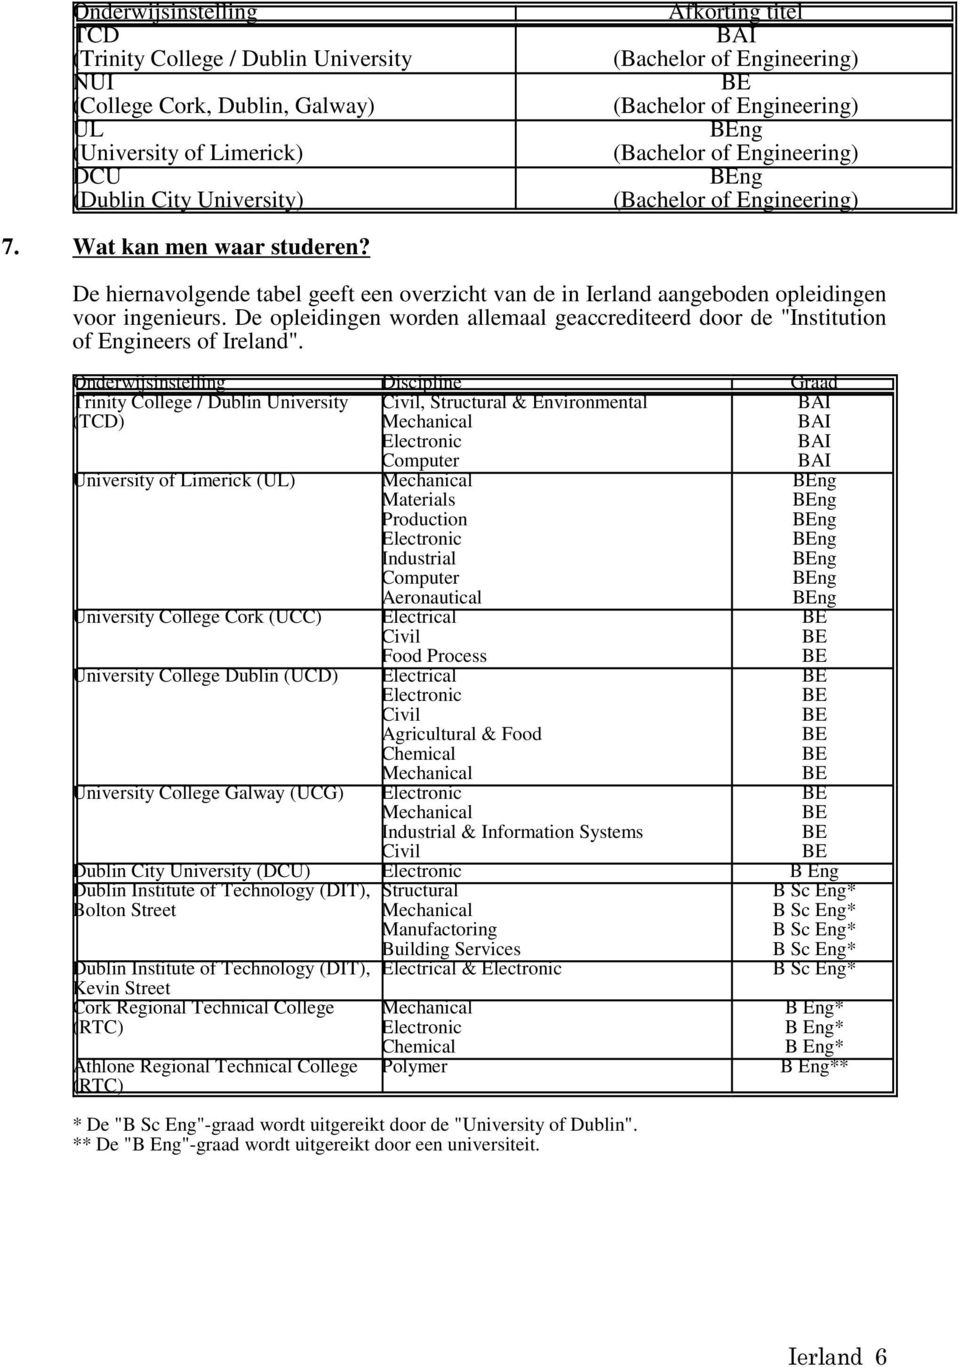 De hiernavolgende tabel geeft een overzicht van de in Ierland aangeboden opleidingen voor ingenieurs. De opleidingen worden allemaal geaccrediteerd door de "Institution of Engineers of Ireland".